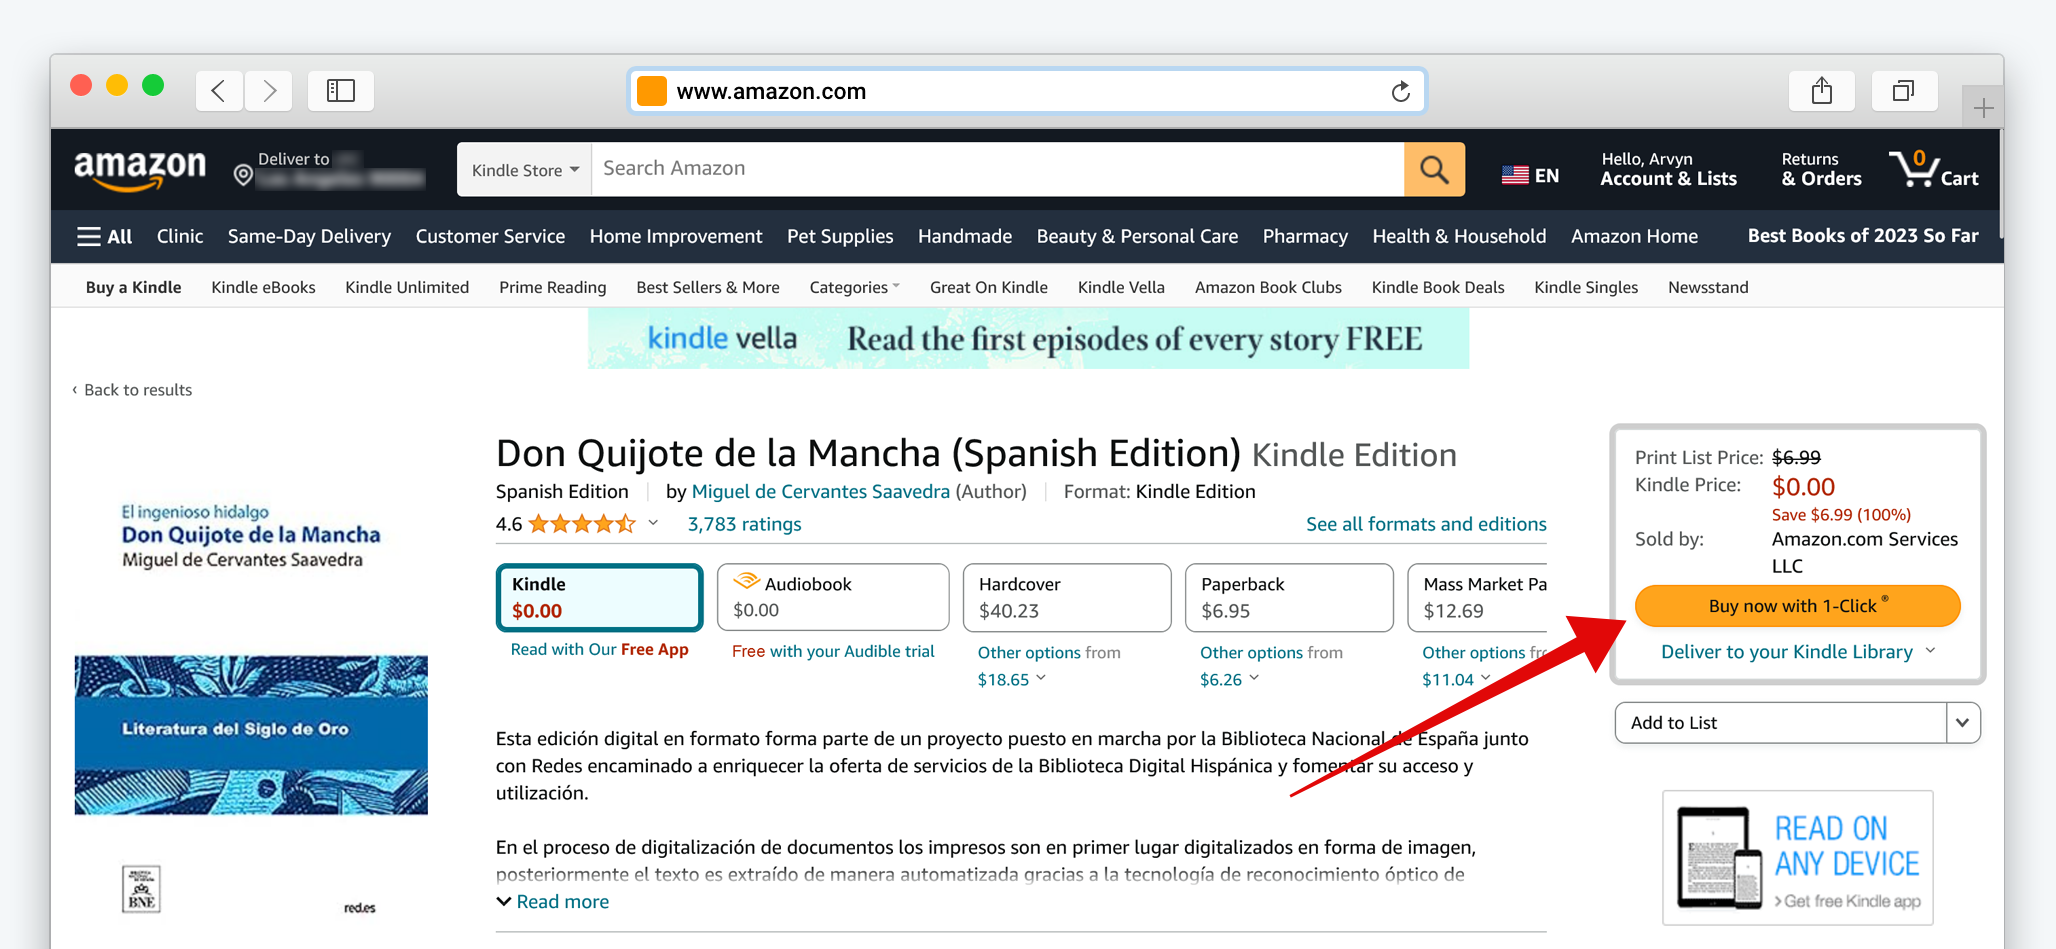 Amazon Kindle Store Ürün Listesinin Ekran Görüntüsü